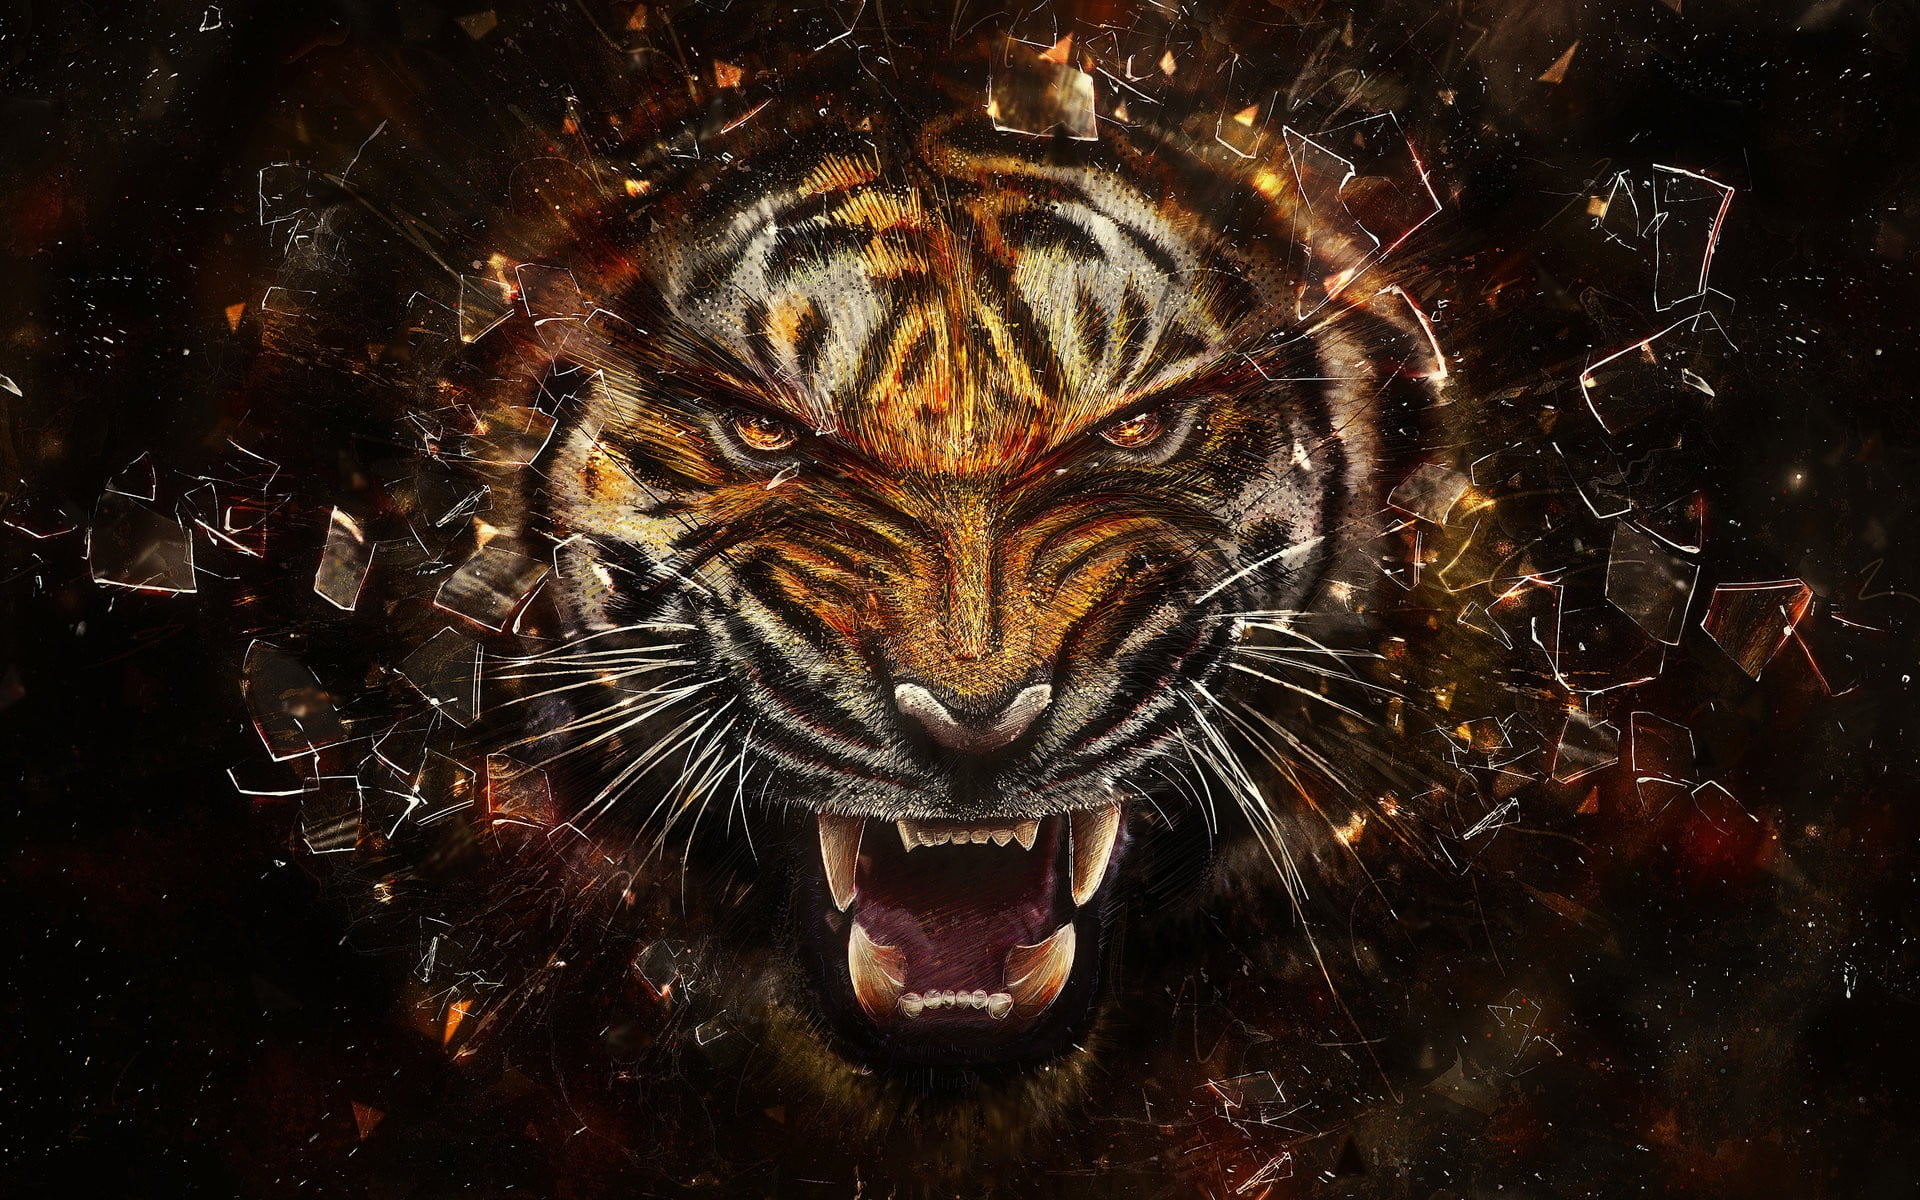 orange tiger illustration, tiger illustration, animals, digital art